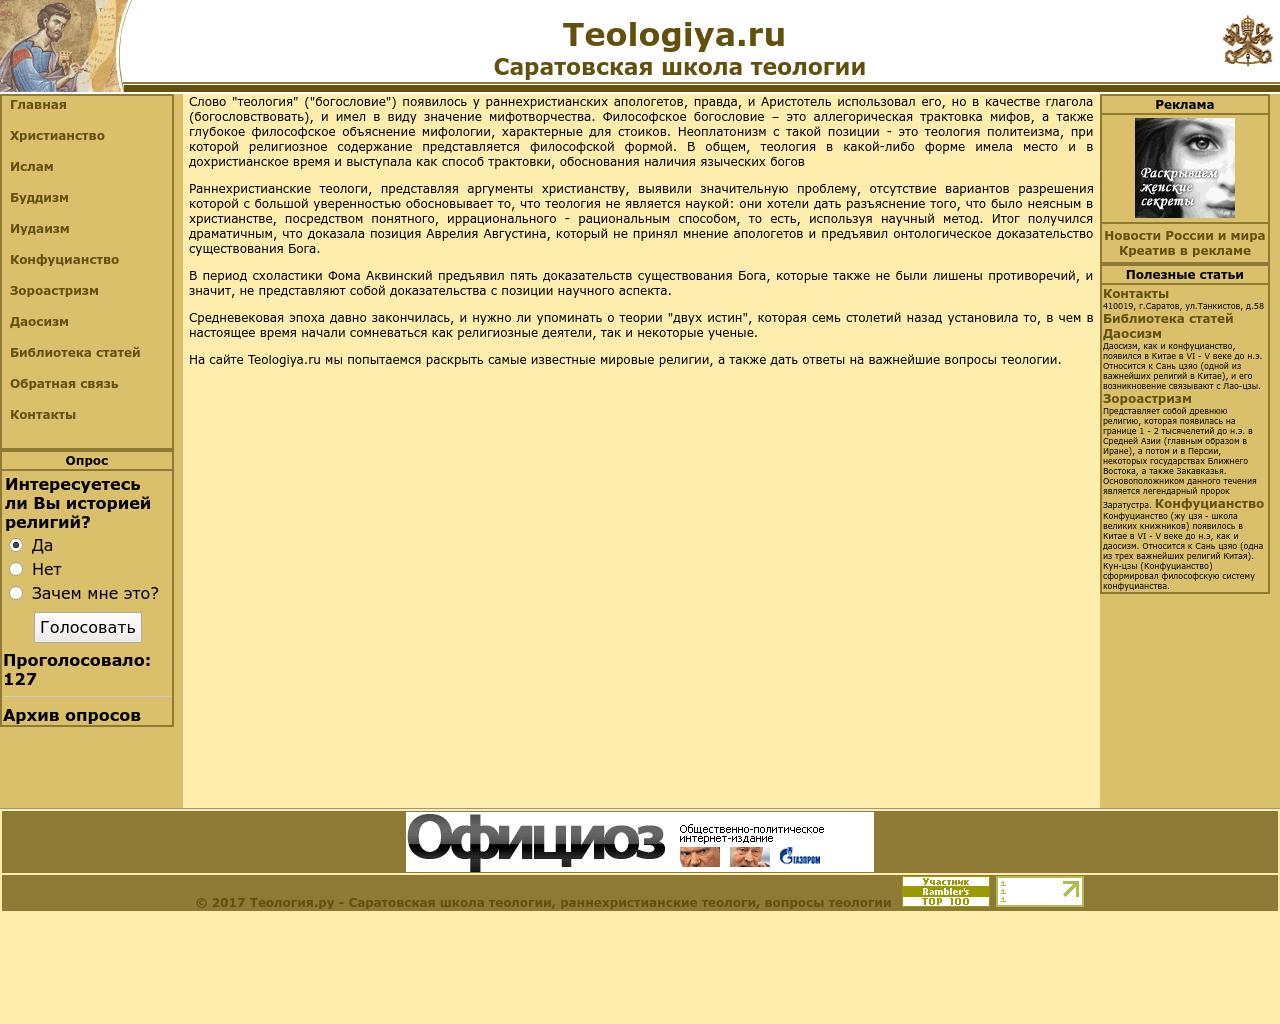 Изображение сайта teologiya.ru в разрешении 1280x1024